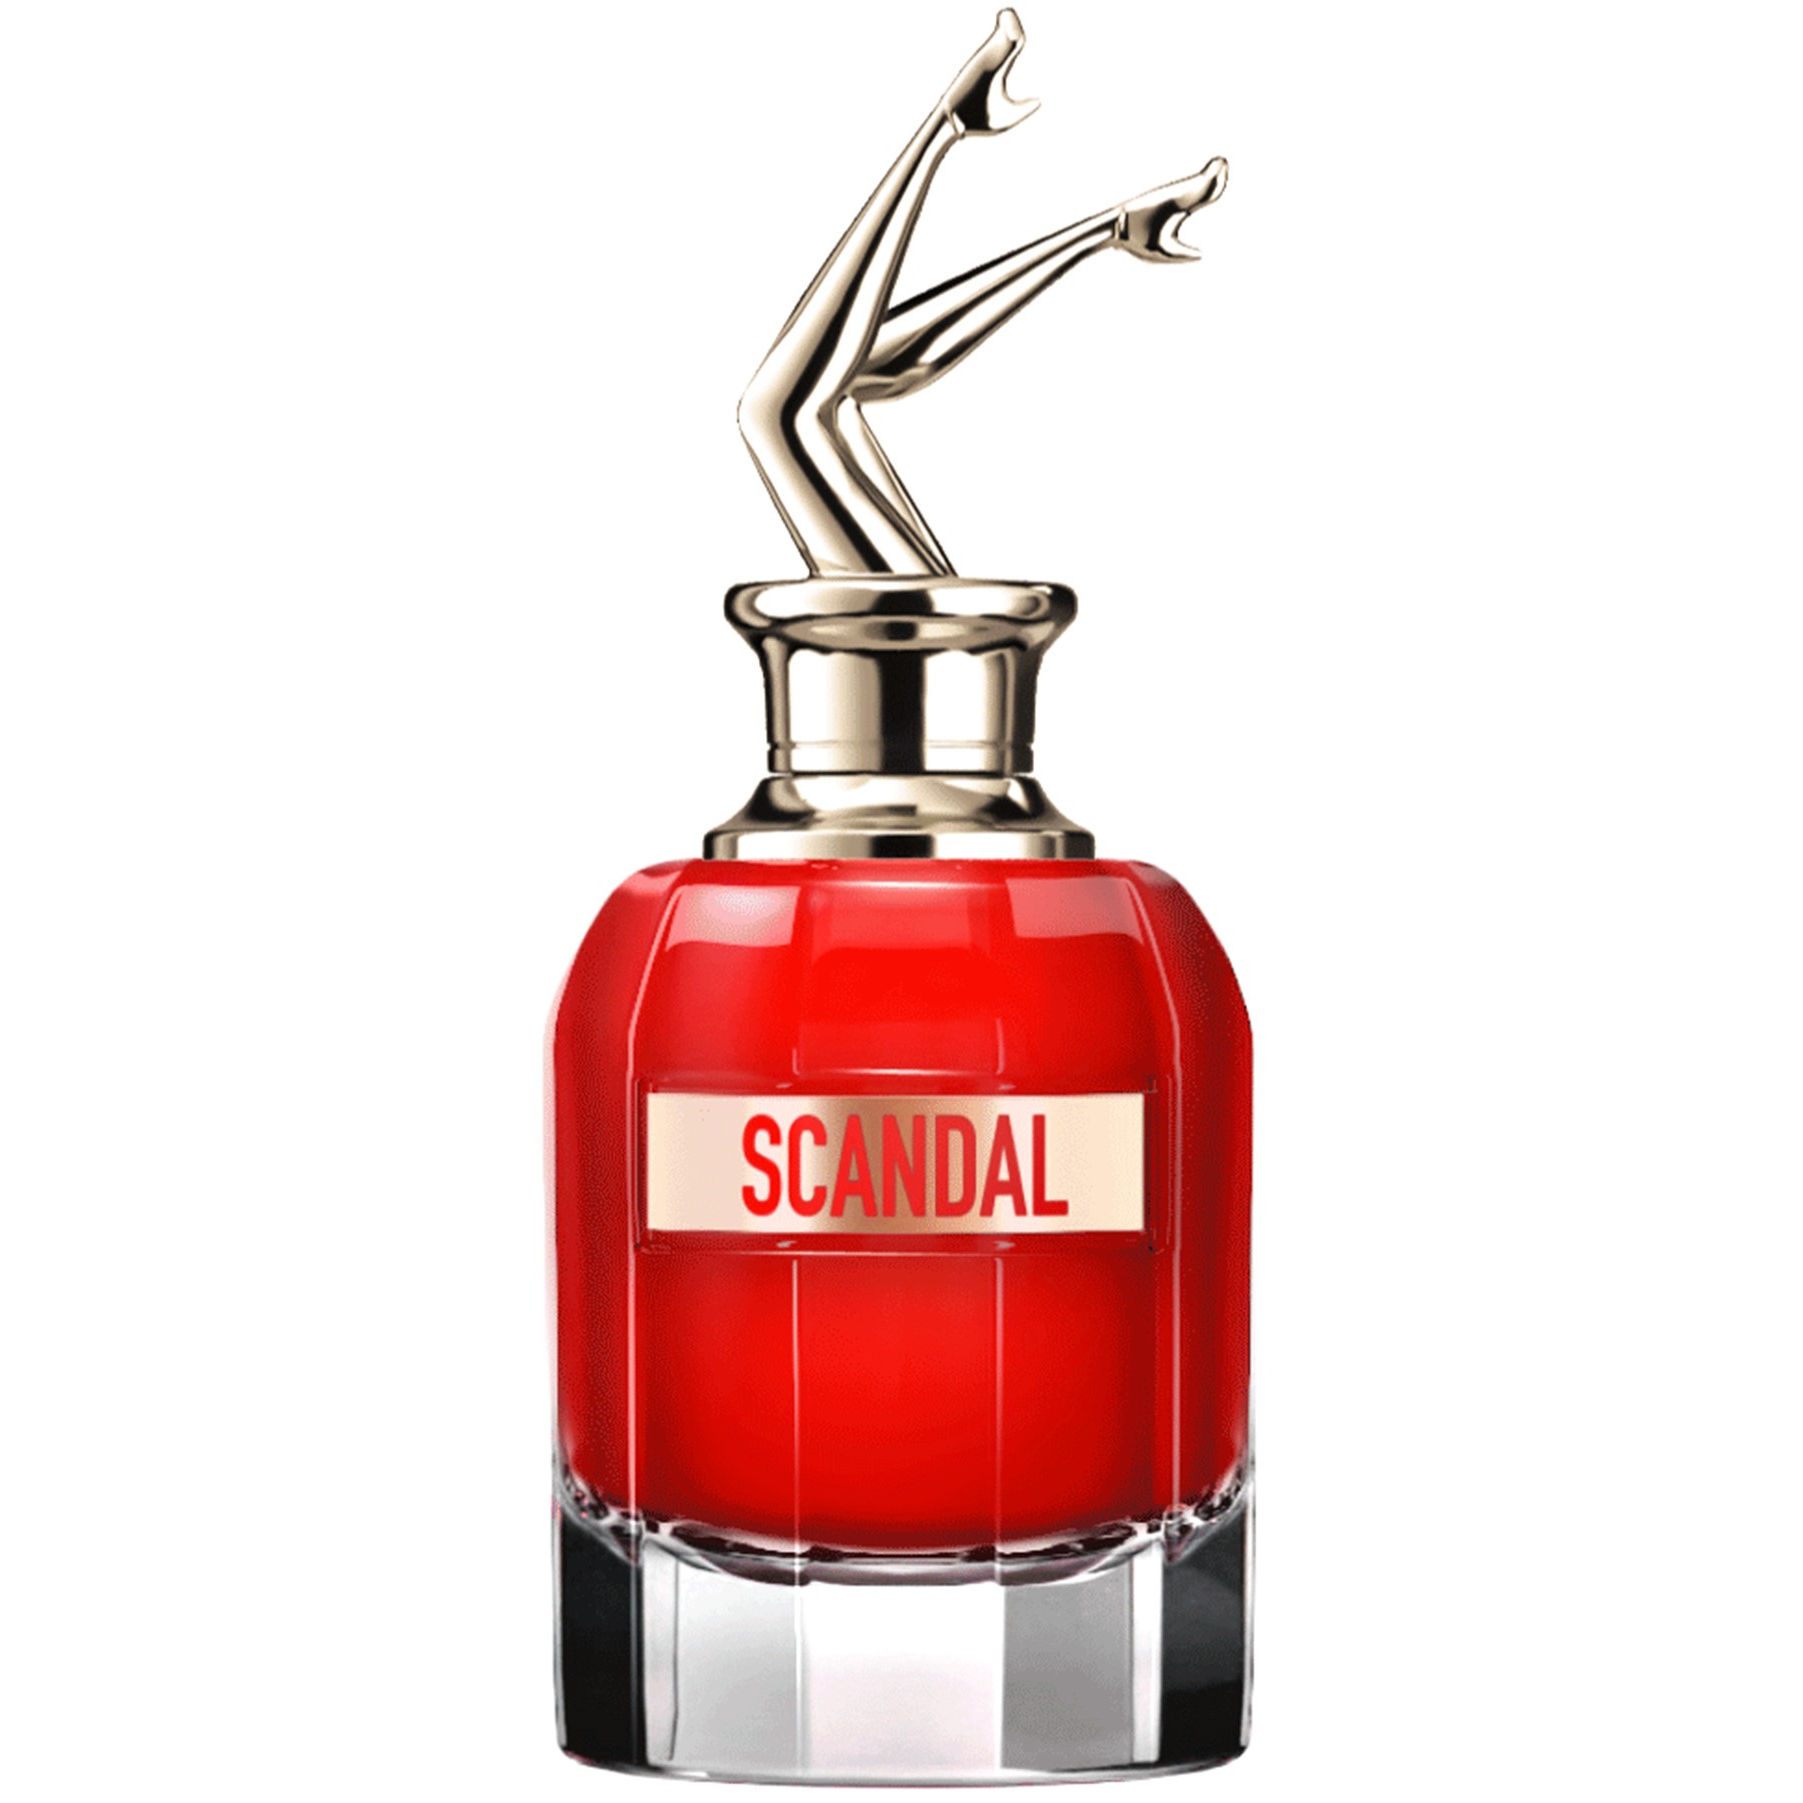 Jean Paul Gaultier Scandal Le Parfum Eau de parfum spray intense 80 ml